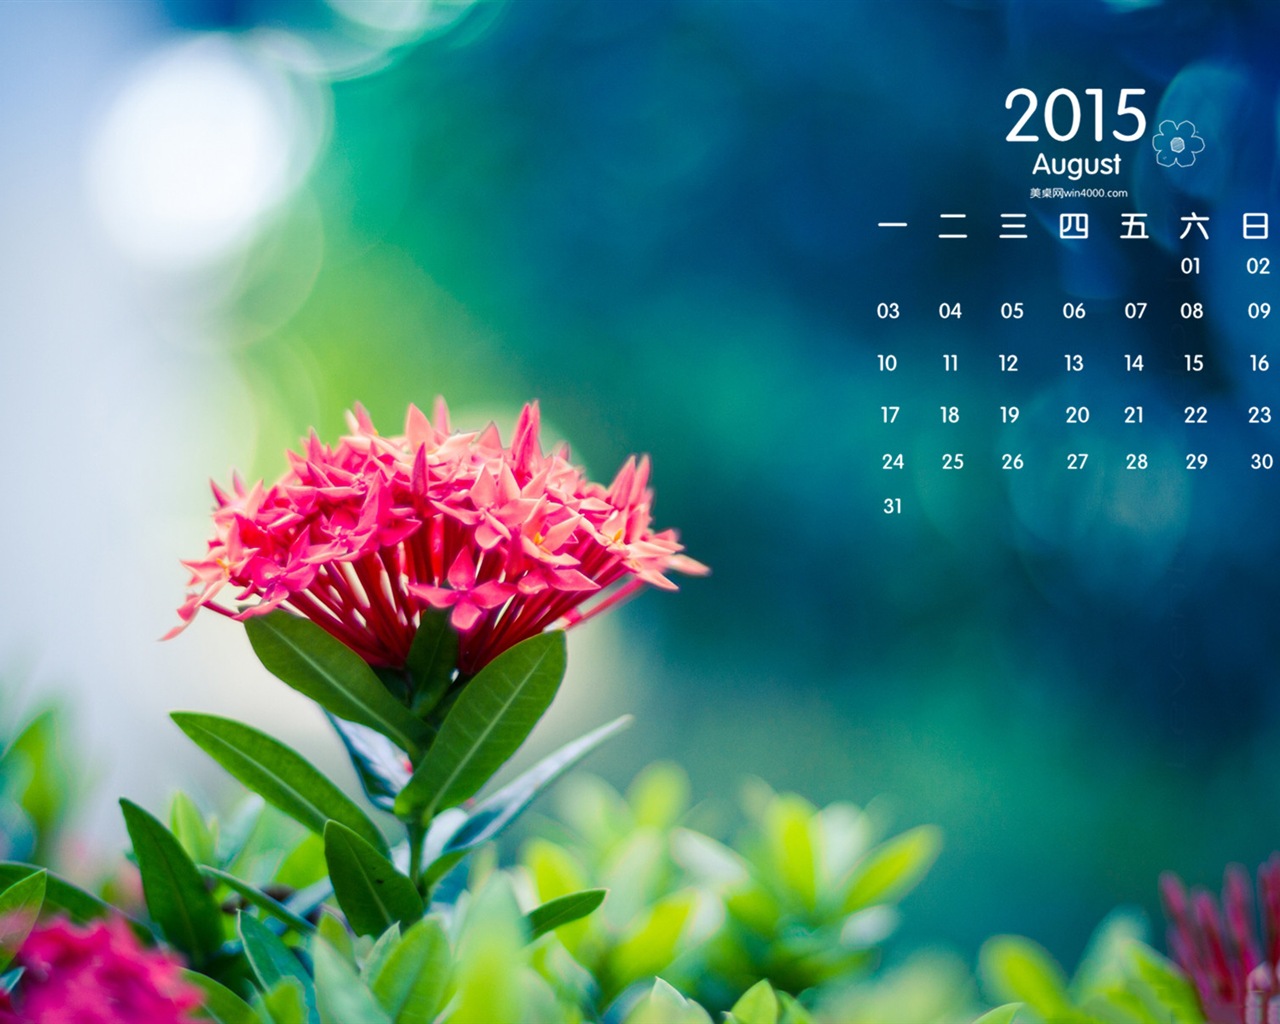 08 2015 fondos de escritorio calendario (1) #12 - 1280x1024